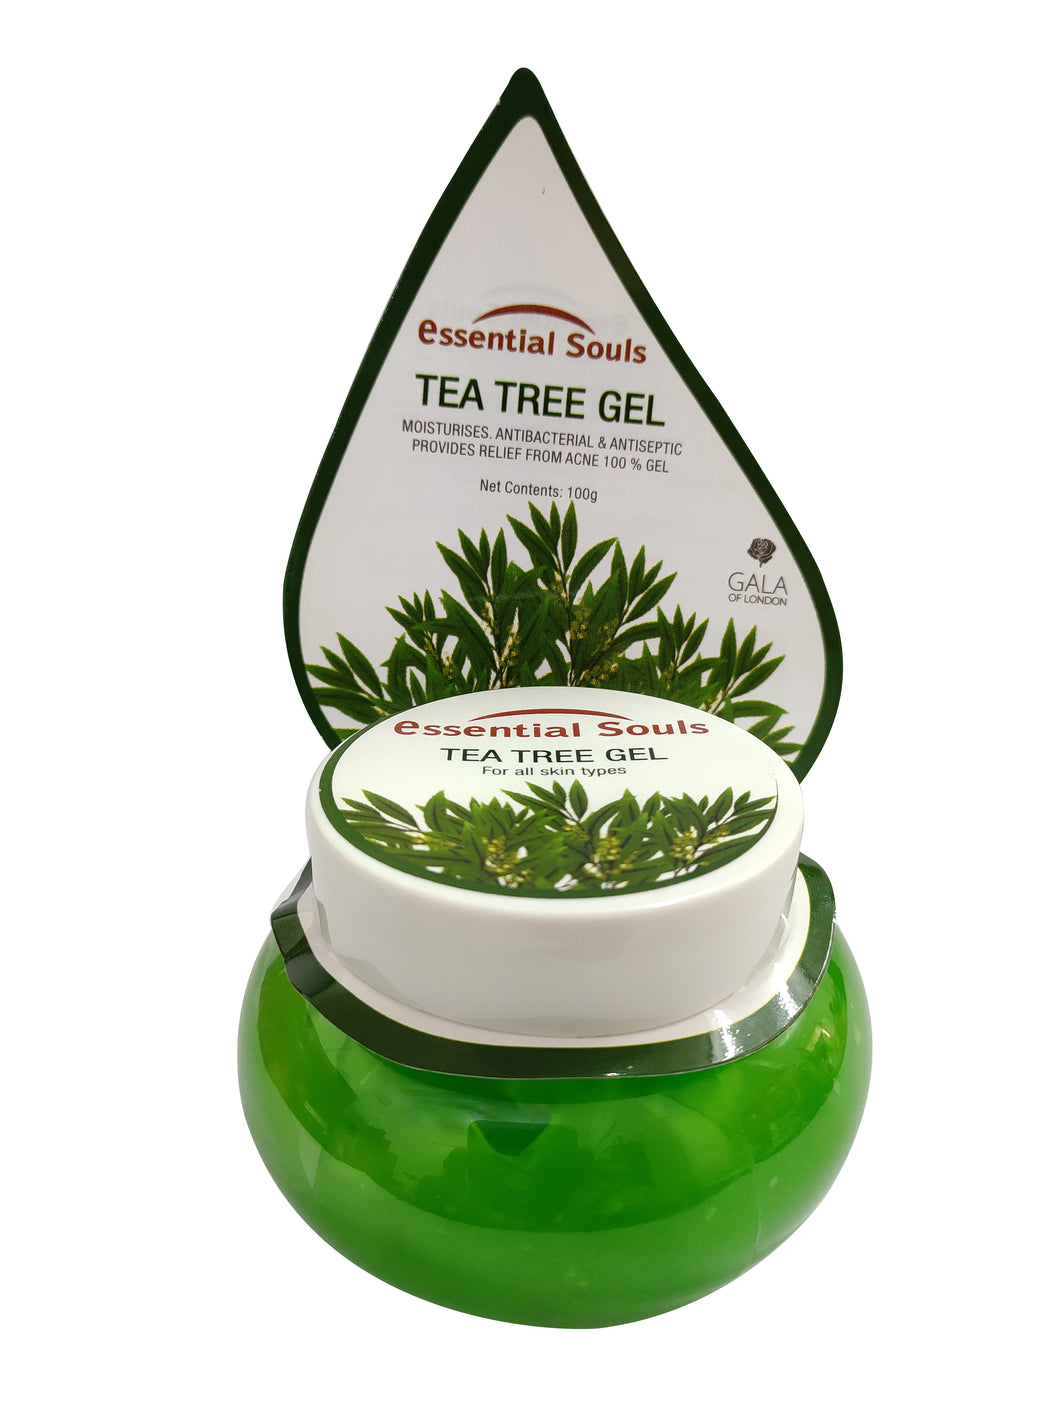 Essential Souls Tea Tree Gel - 100g